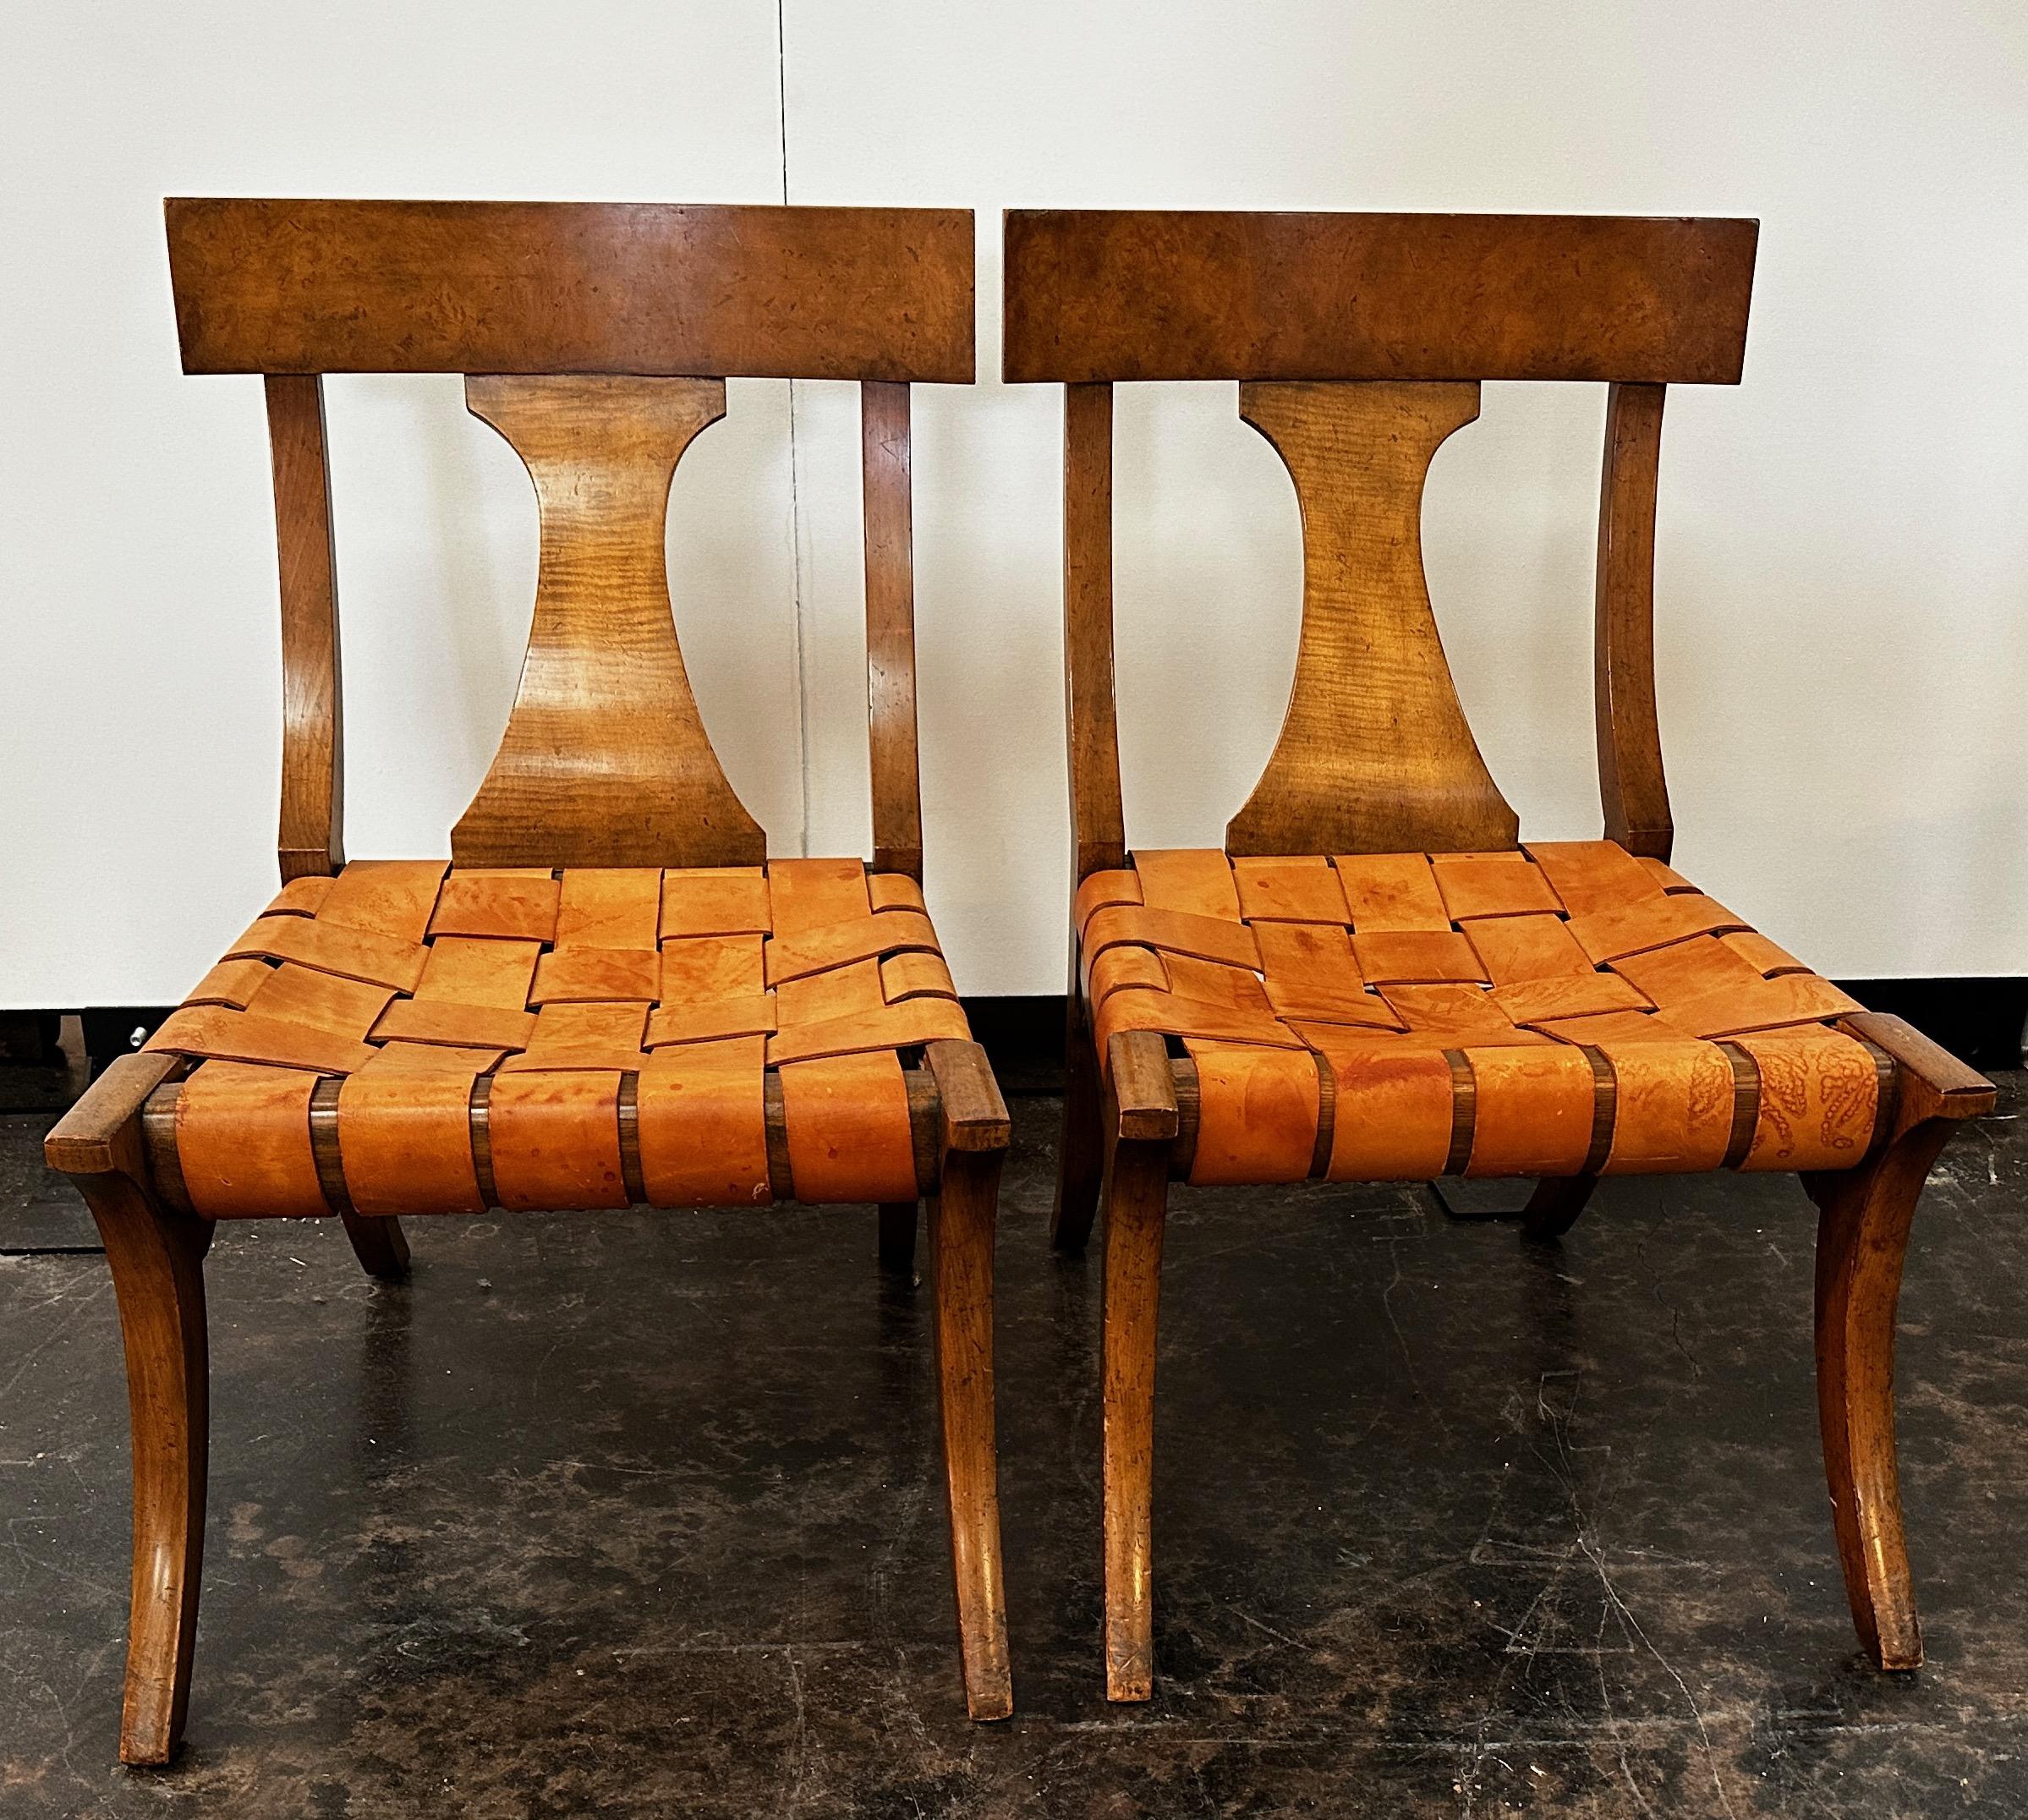 Ces magnifiques chaises Baker Klismos, difficiles à trouver, sont d'une classe à part.  Vintage et en très bon état, avec un dos incurvé, un cerclage en cuir et une jambe enveloppante.  Les chaises Klismos sont dotées d'une touche particulière, à